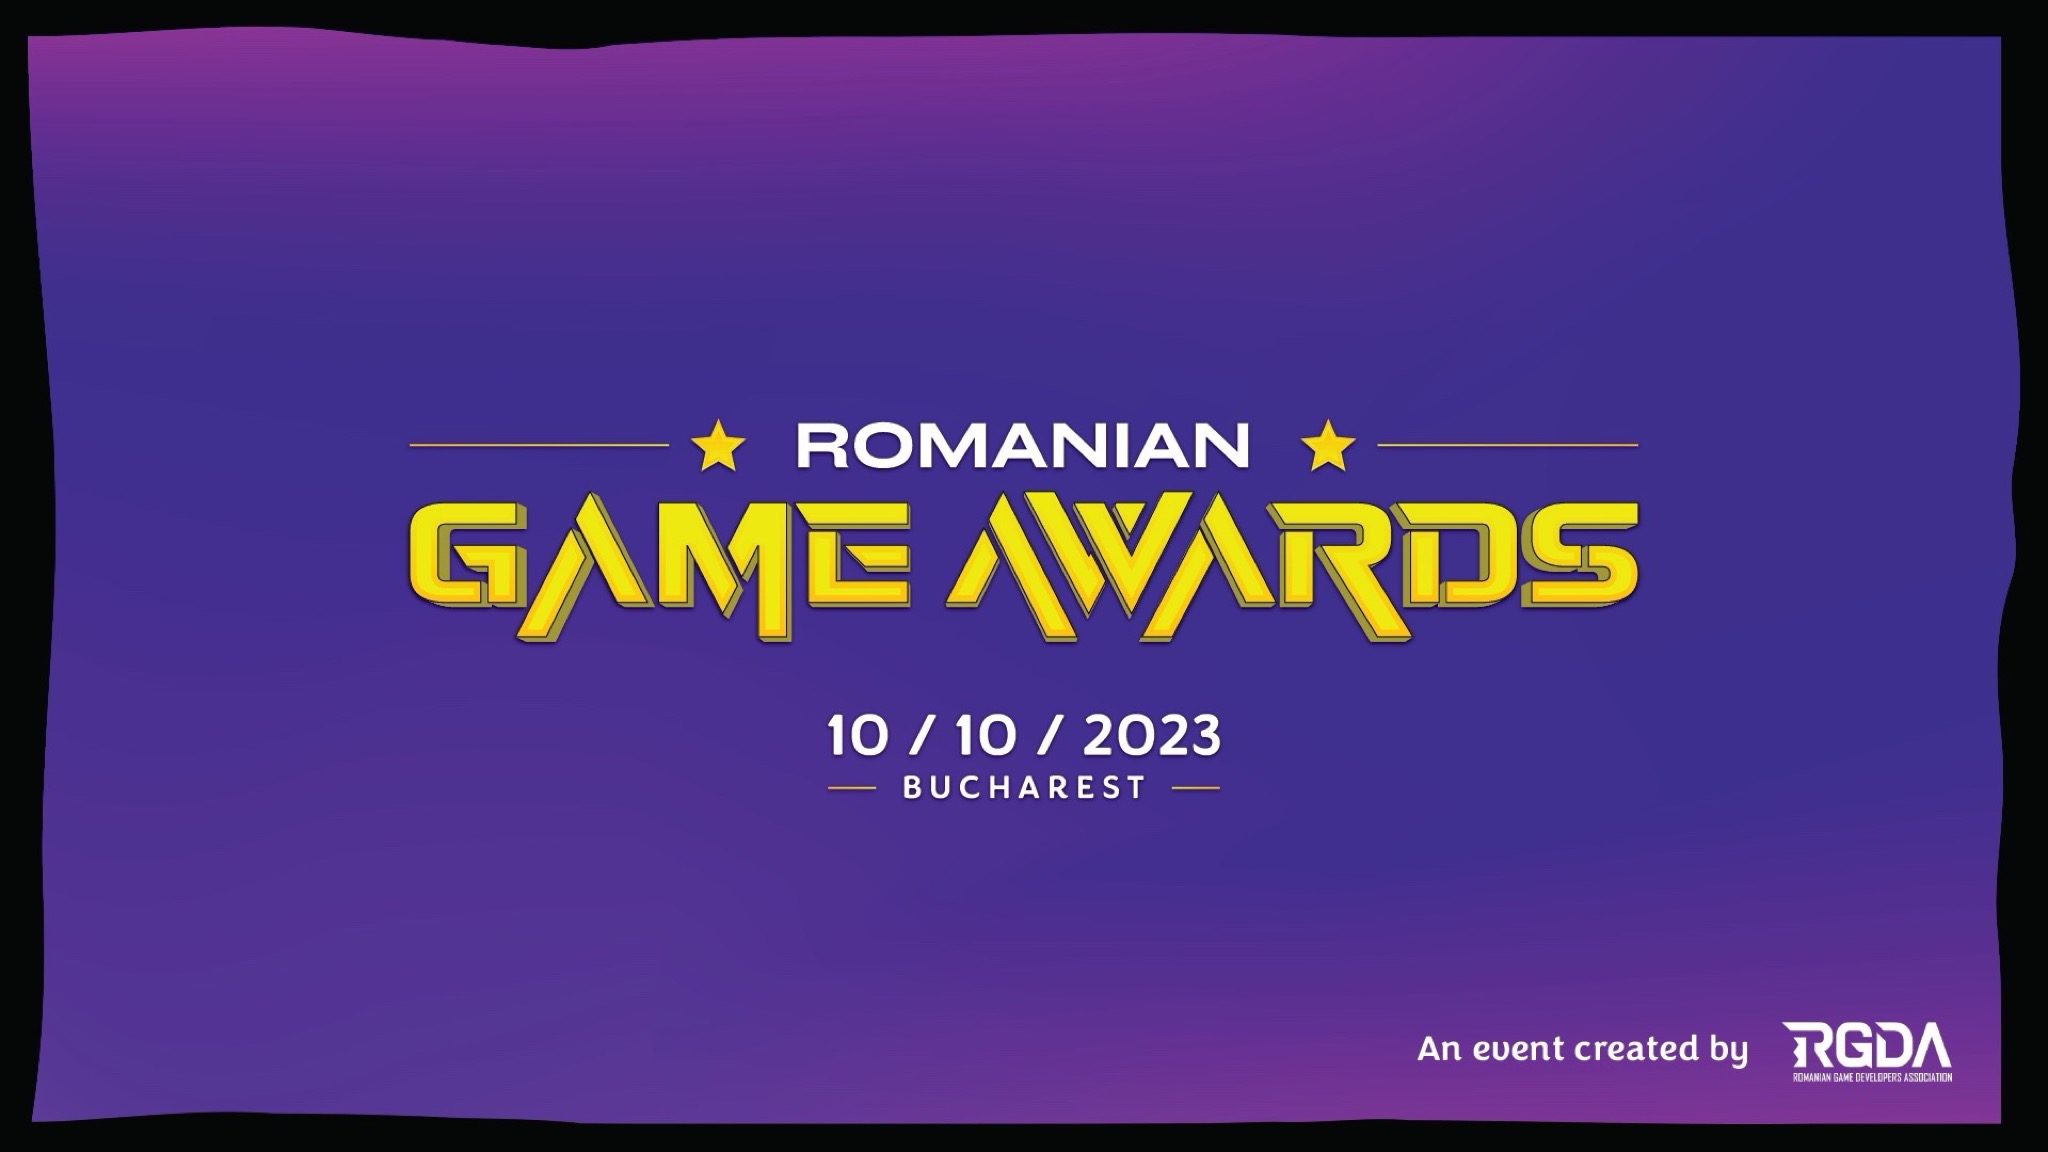 Aceste jocuri video la care sunt visate de un milion de jucători din întreaga lume în noul an au fost dezvoltate în România